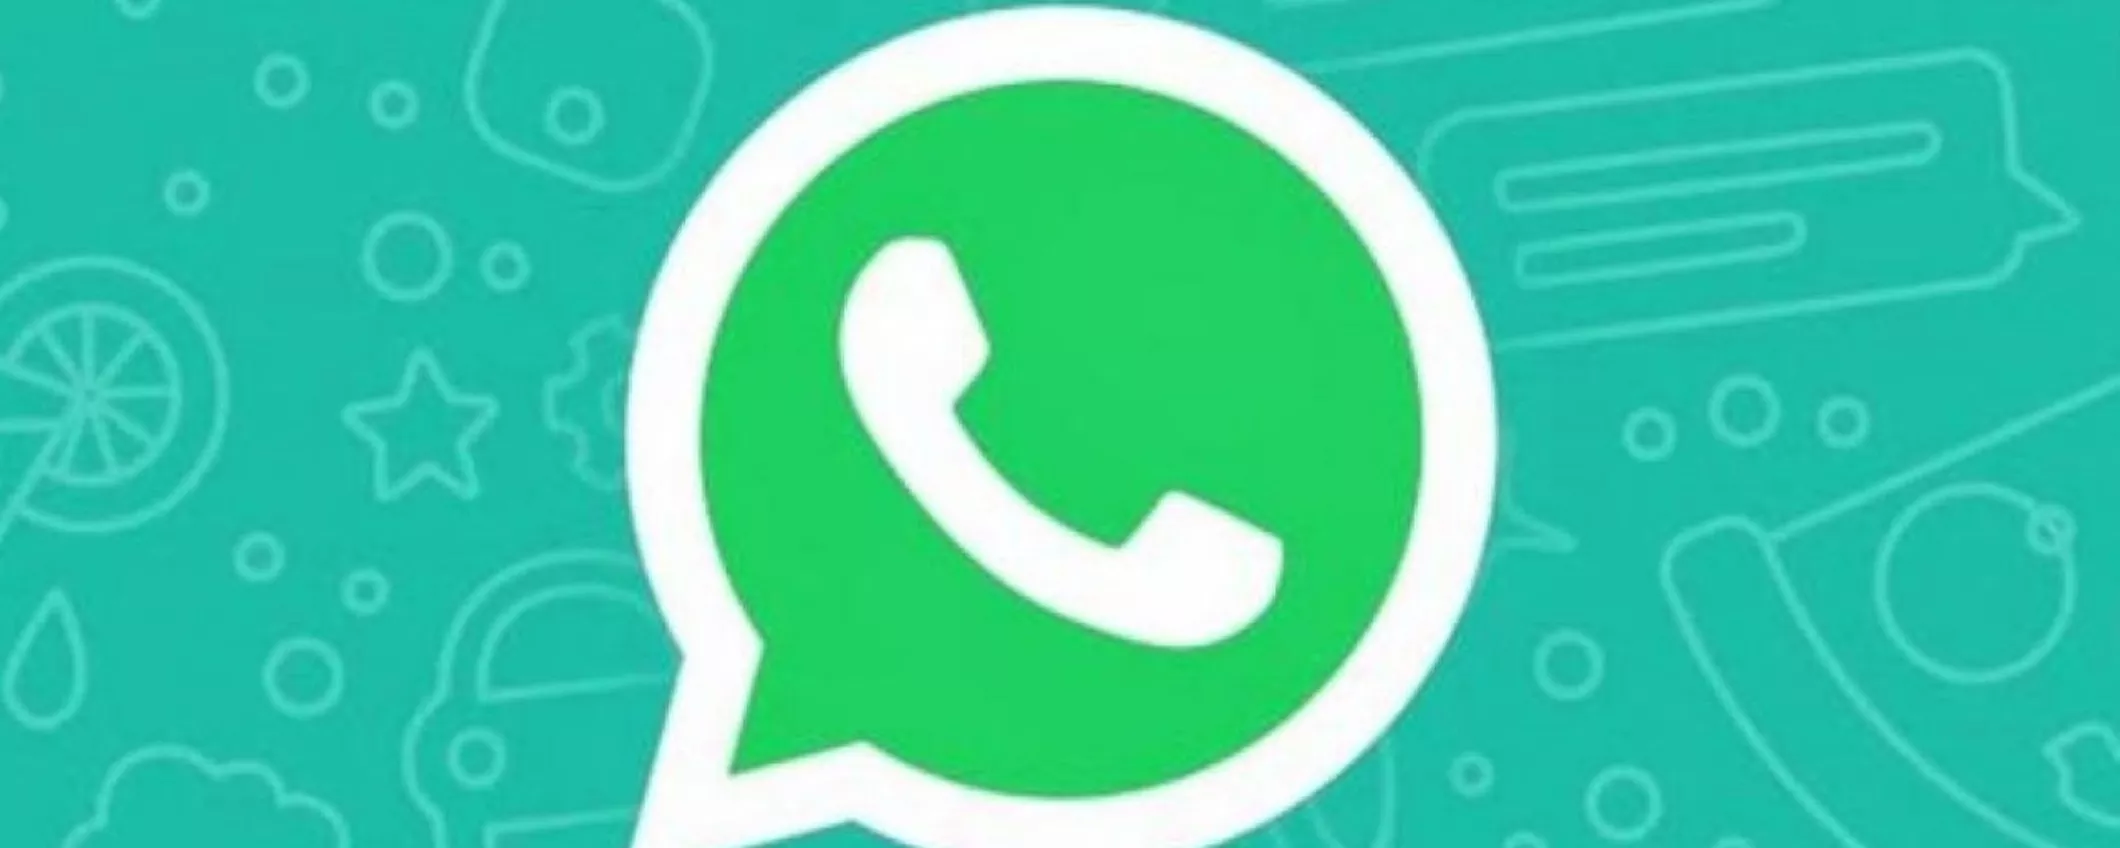 WhatsApp introdurrà la doppia verifica per le versioni web e desktop